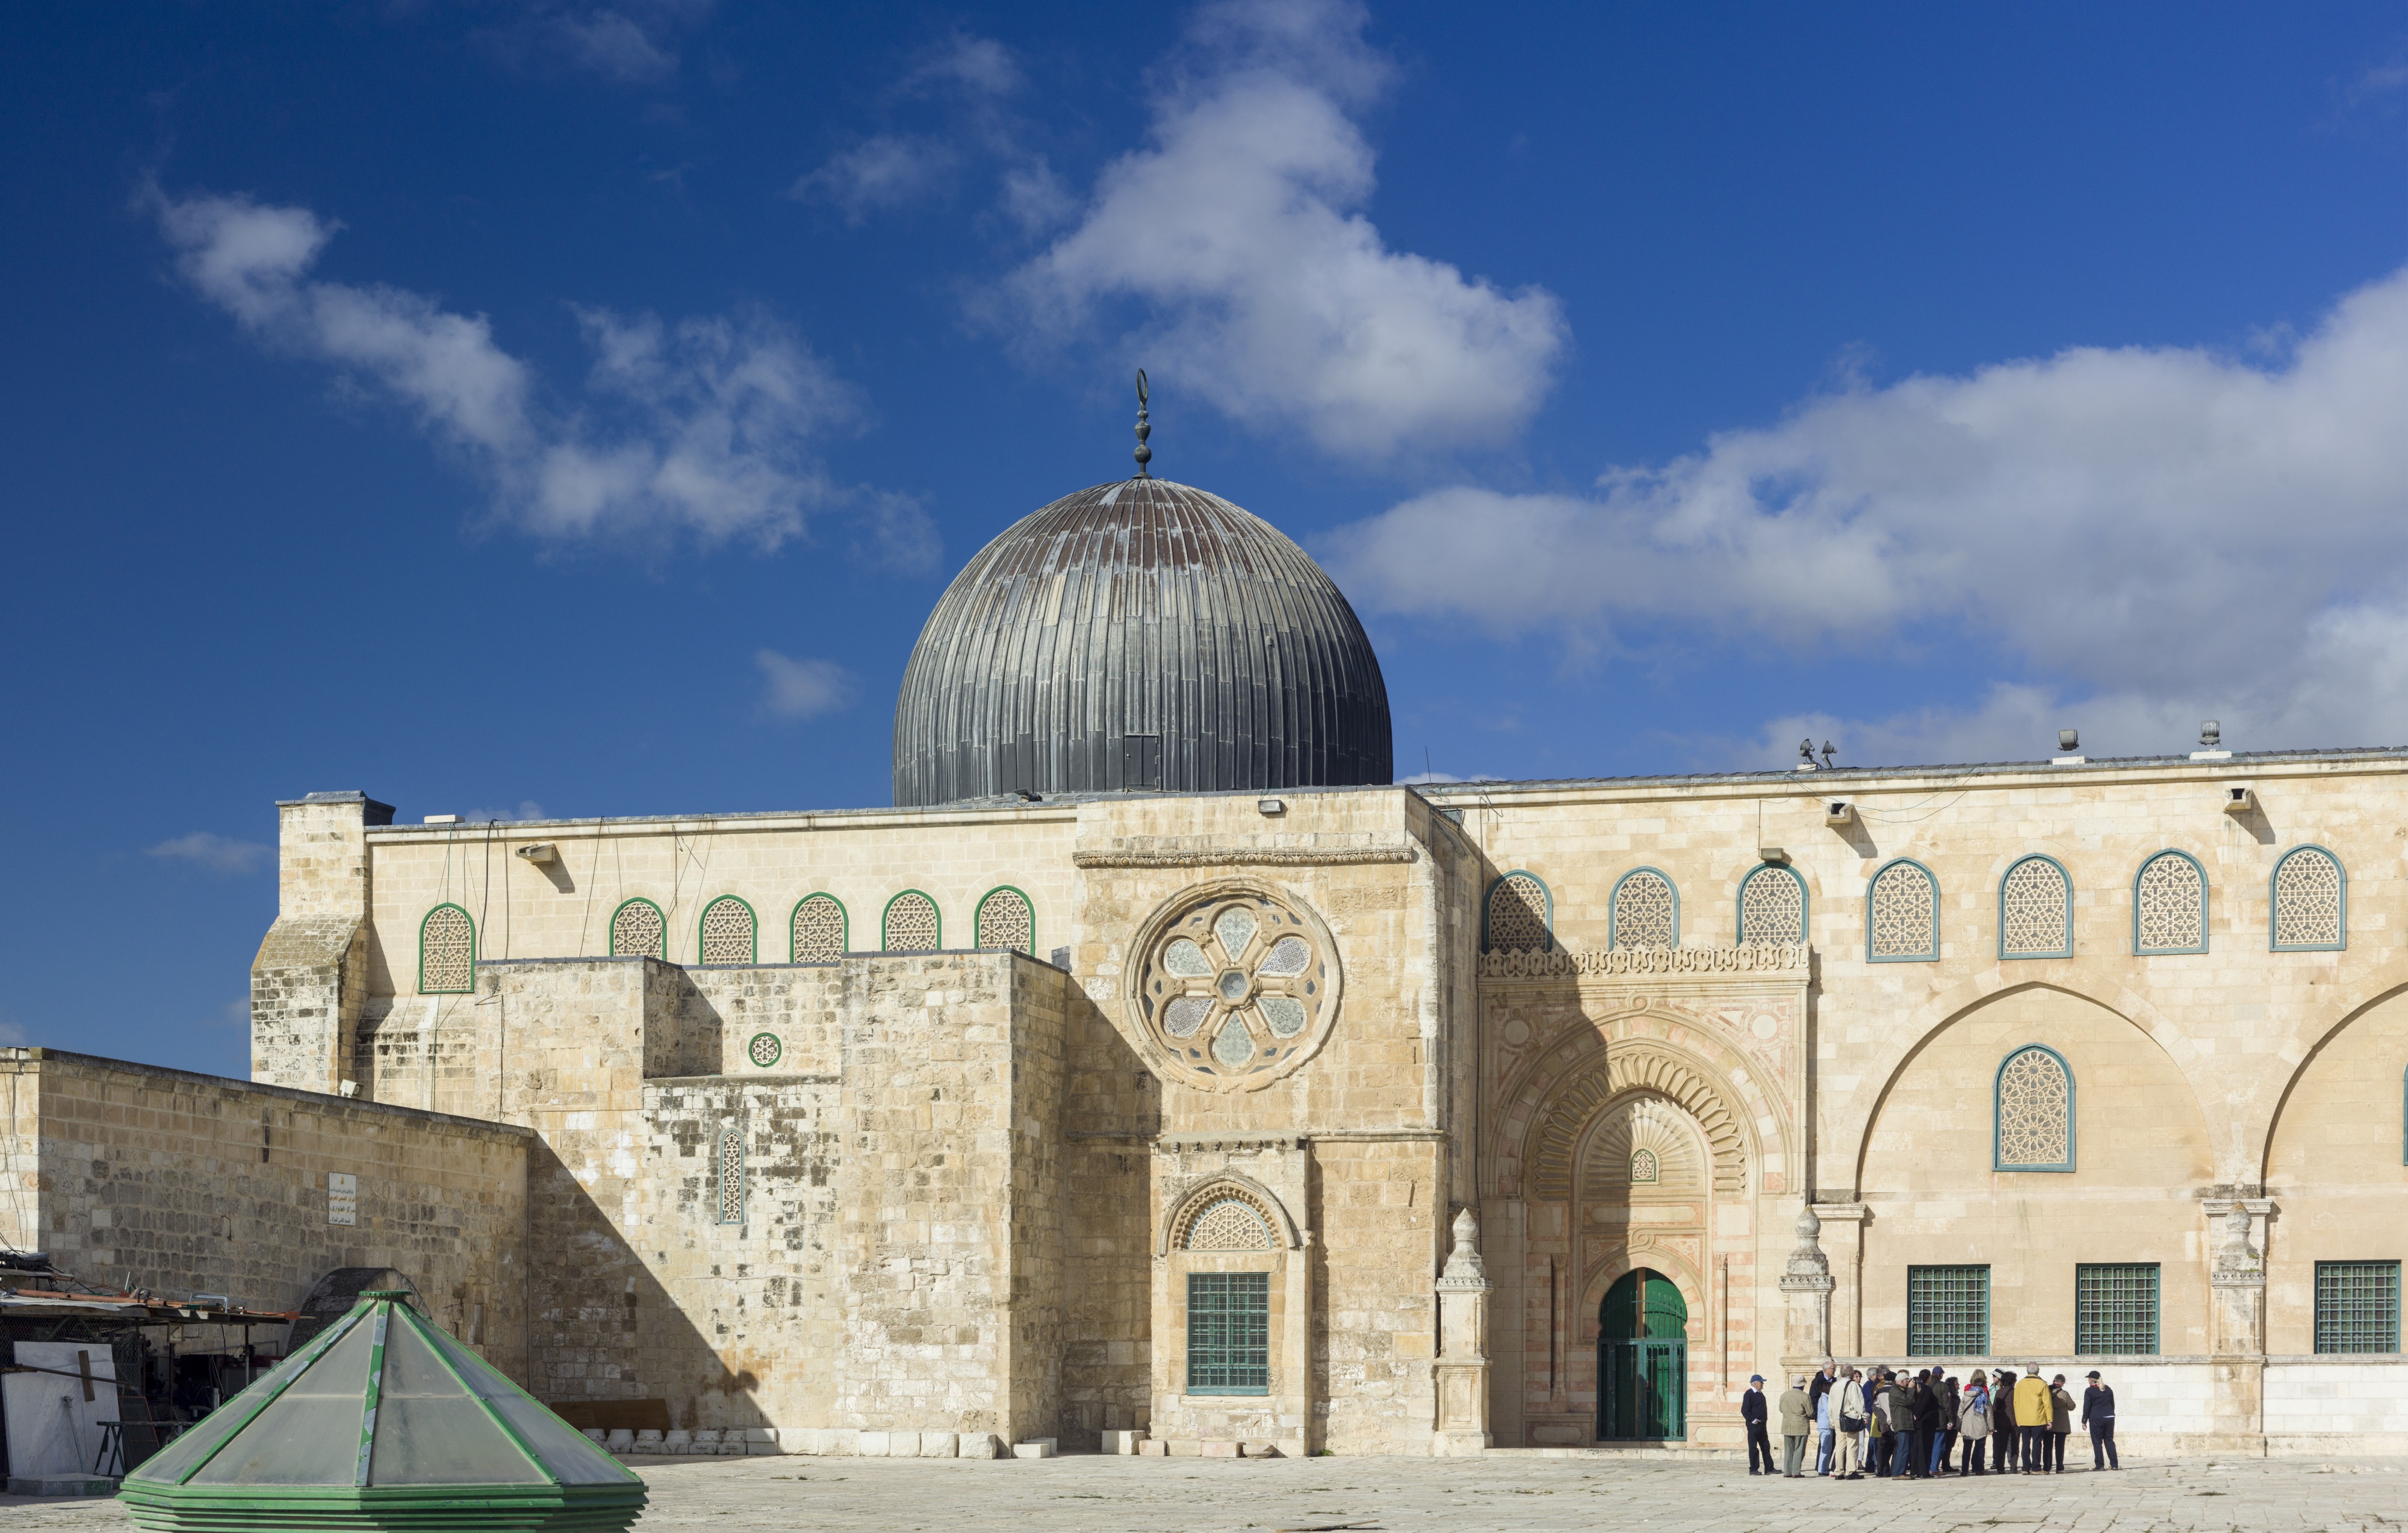 Israel-2013-Jerusalem-Temple Mount-Al-Aqsa Mosque 04